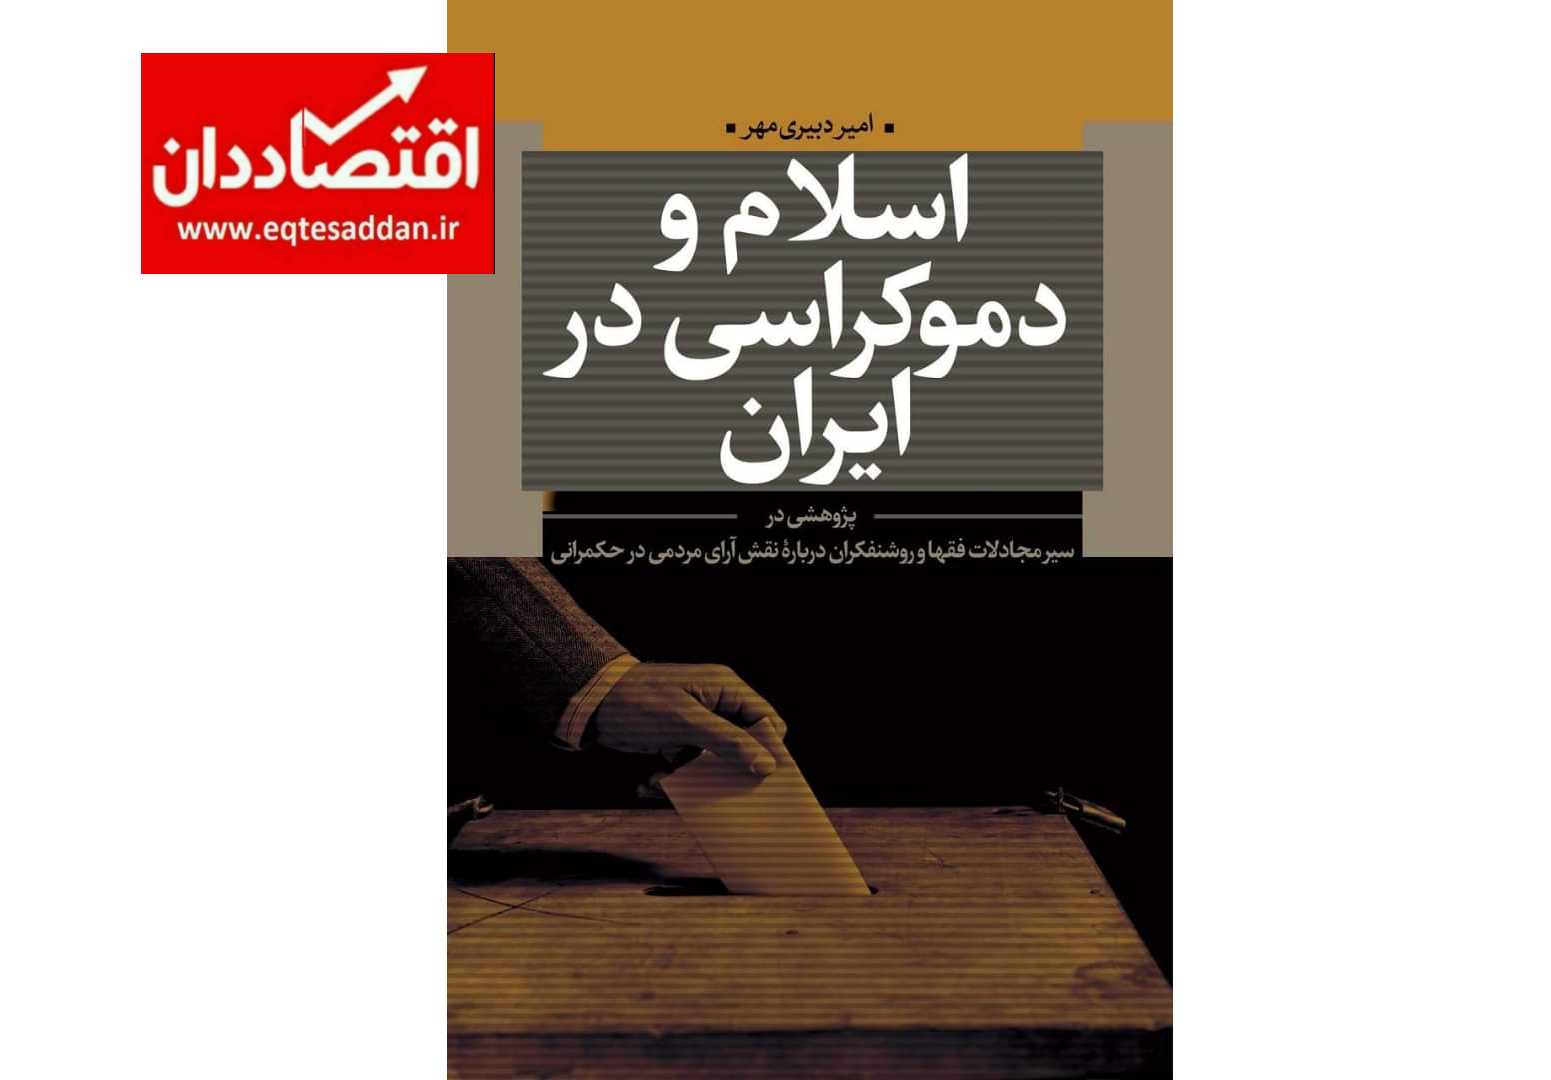 استقبال از رونمایی کتاب اسلام و دموکراسی در ایران